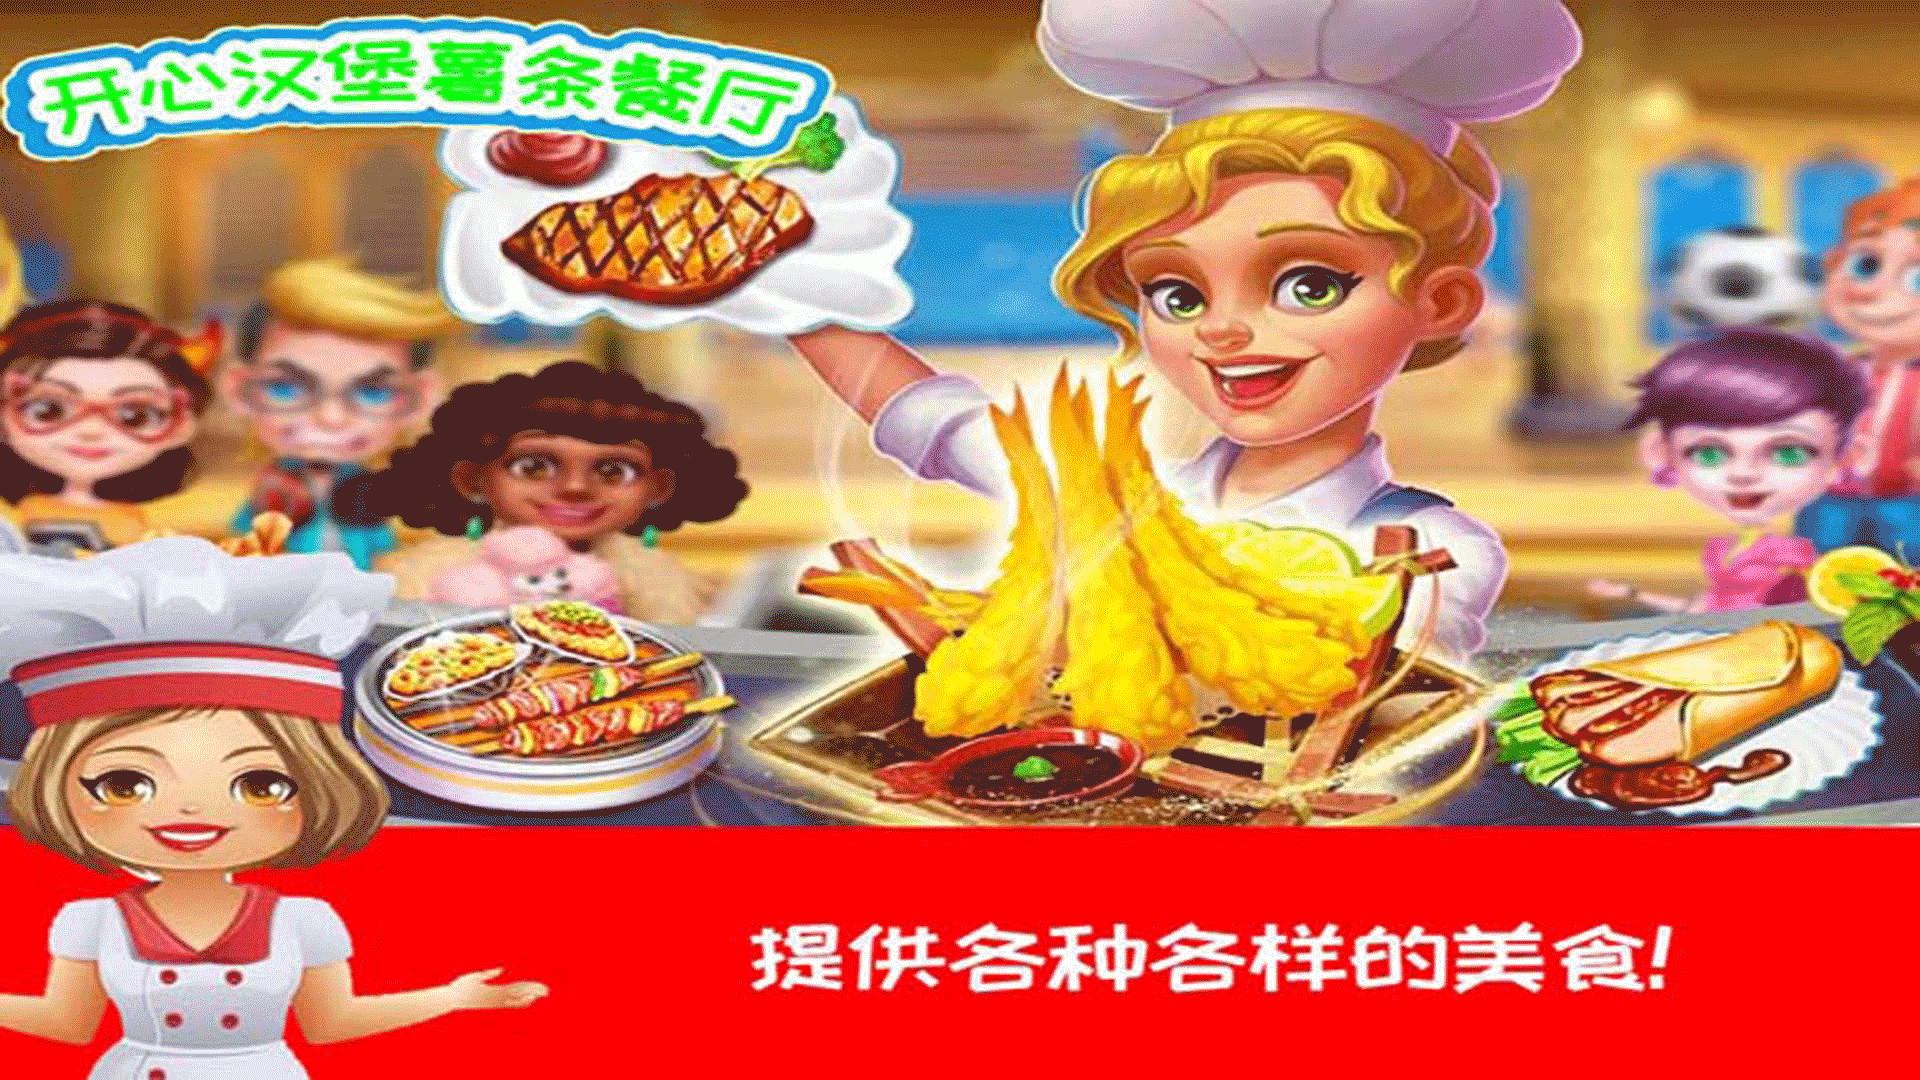 开心汉堡薯条餐厅中文版-开心汉堡薯条餐厅汉化版下载